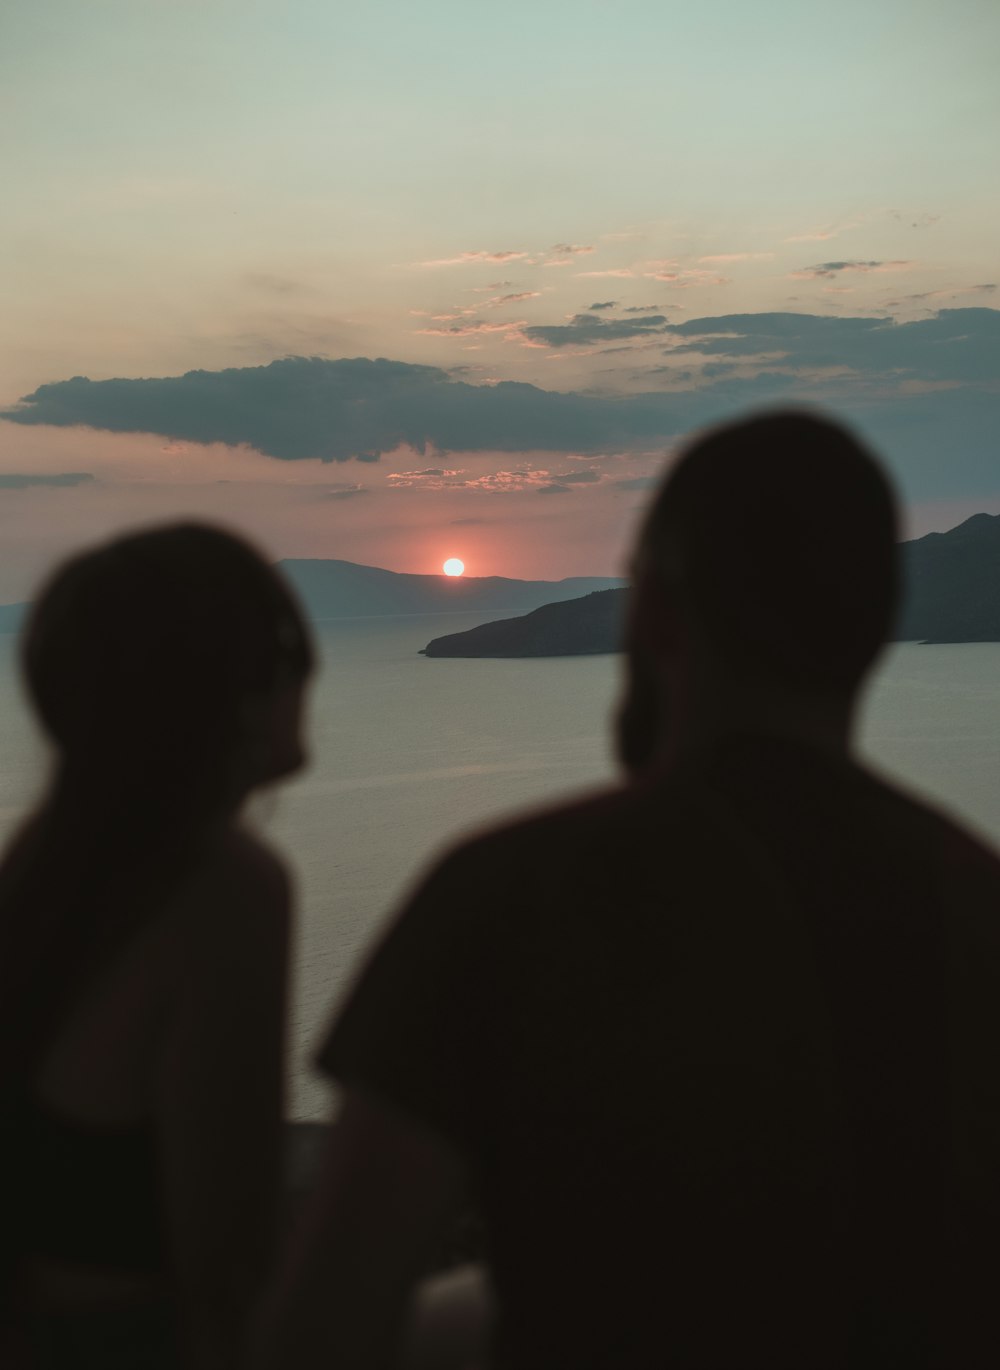 Silueta de personas de pie en la orilla del mar durante la puesta del sol